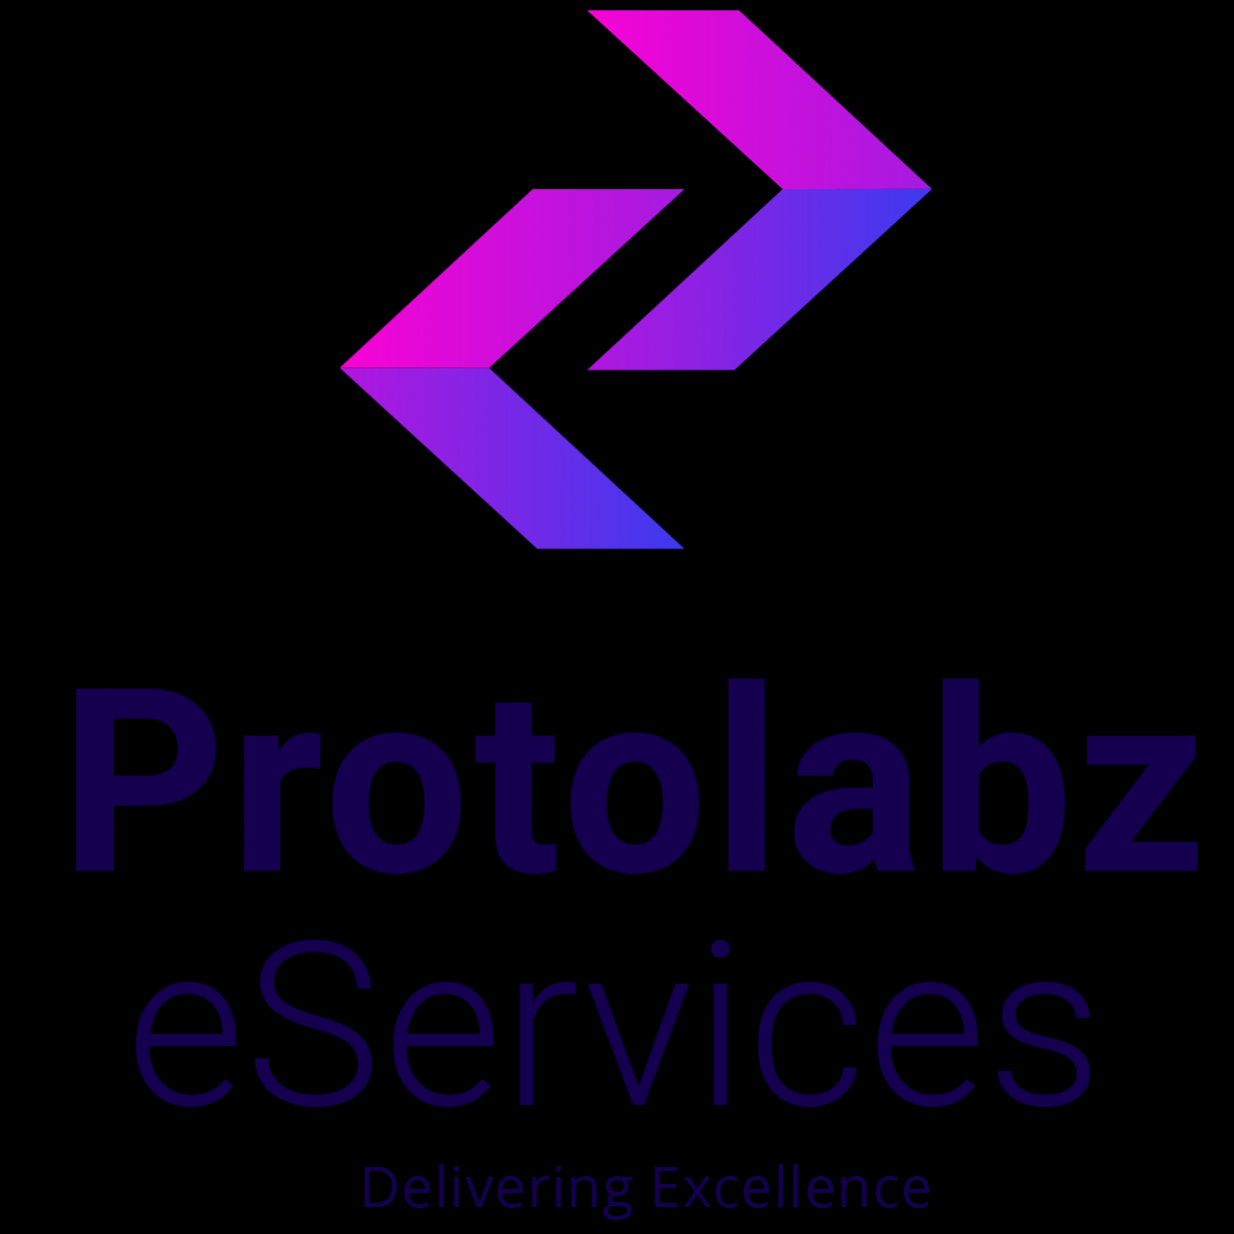 ProtolabzeService